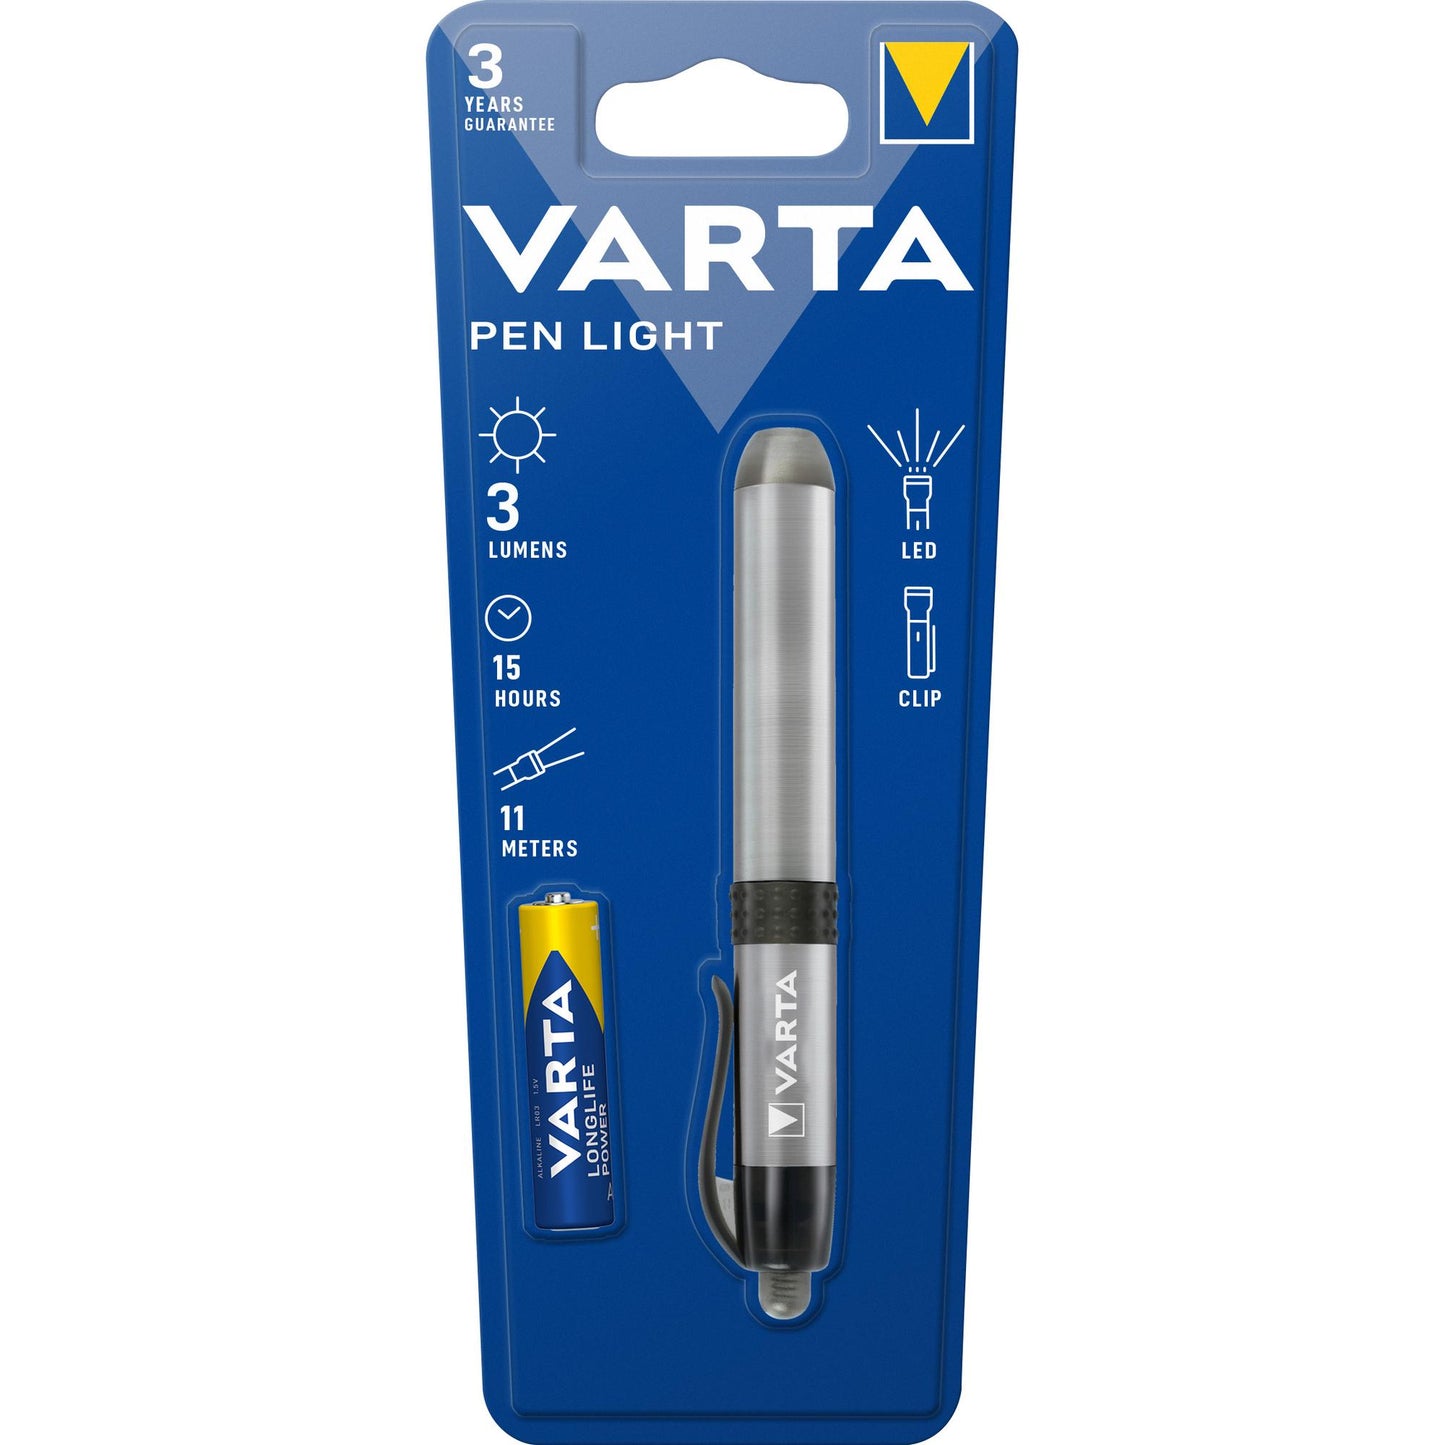 VARTA LED Taschenlampe Easy Line Pen Light, 3lm inkl. 1x Batterie Alkaline AAA, Retail Blister